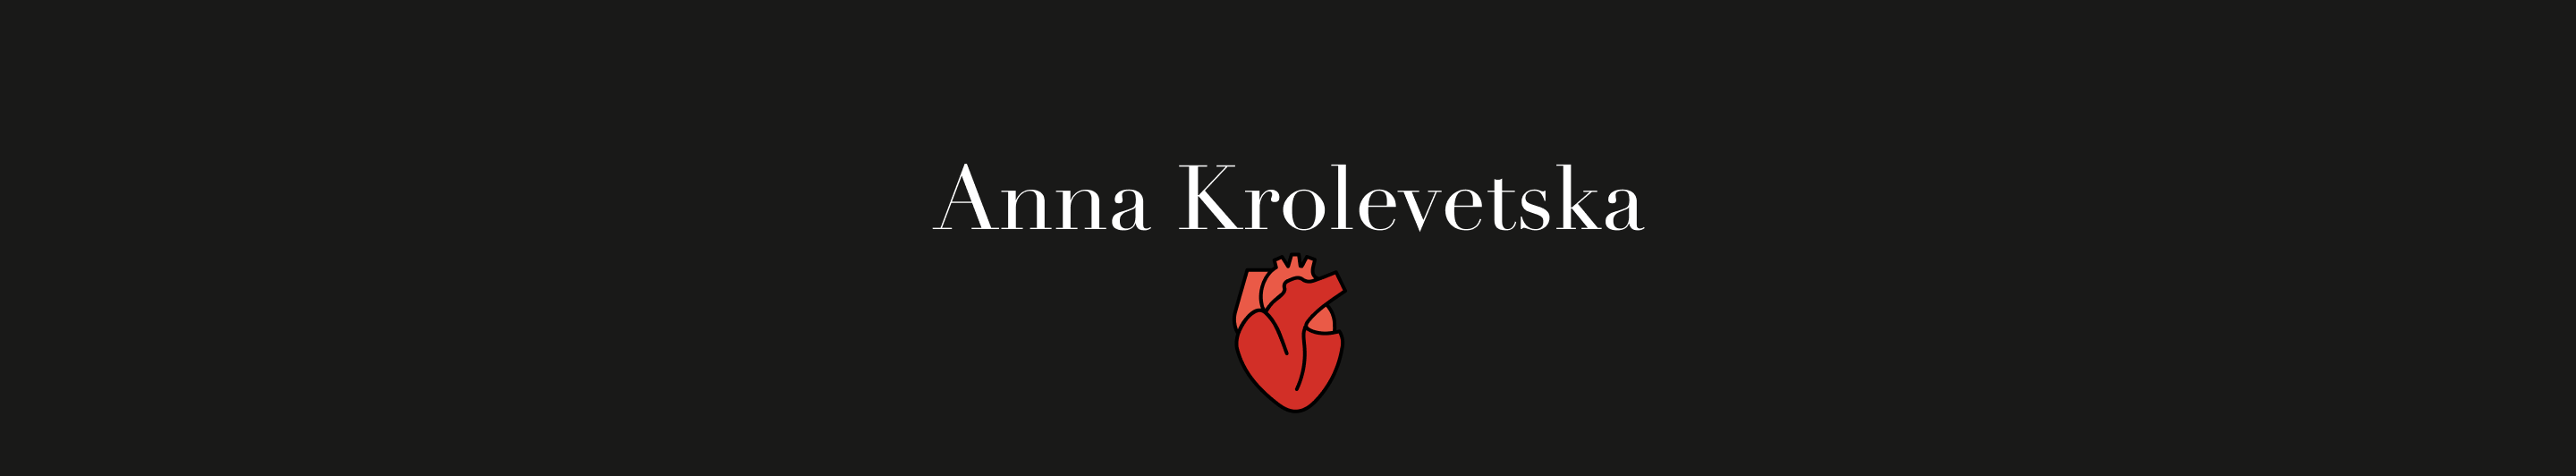 Banner de perfil de Anna Krolevetska